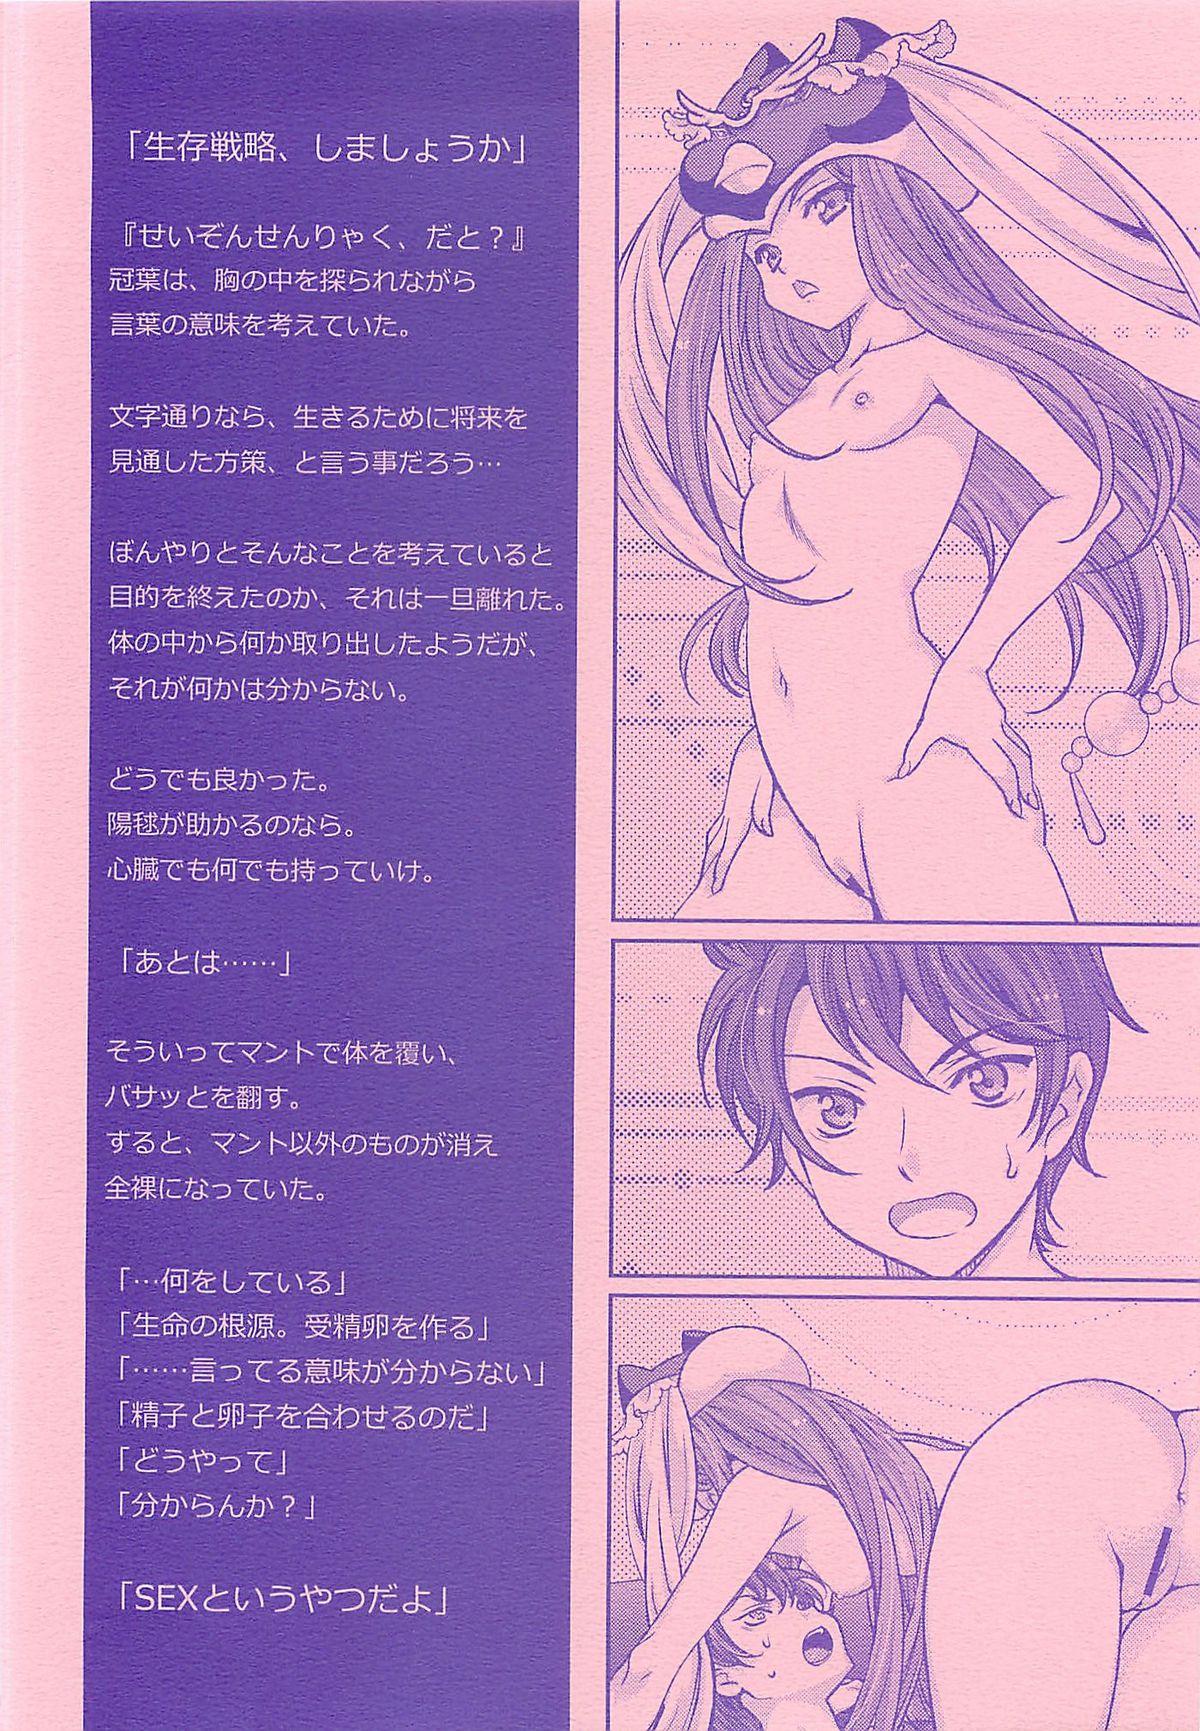 Redhead Seizon Senryaku no Tashinamikata - Mawaru penguindrum Straight - Page 3